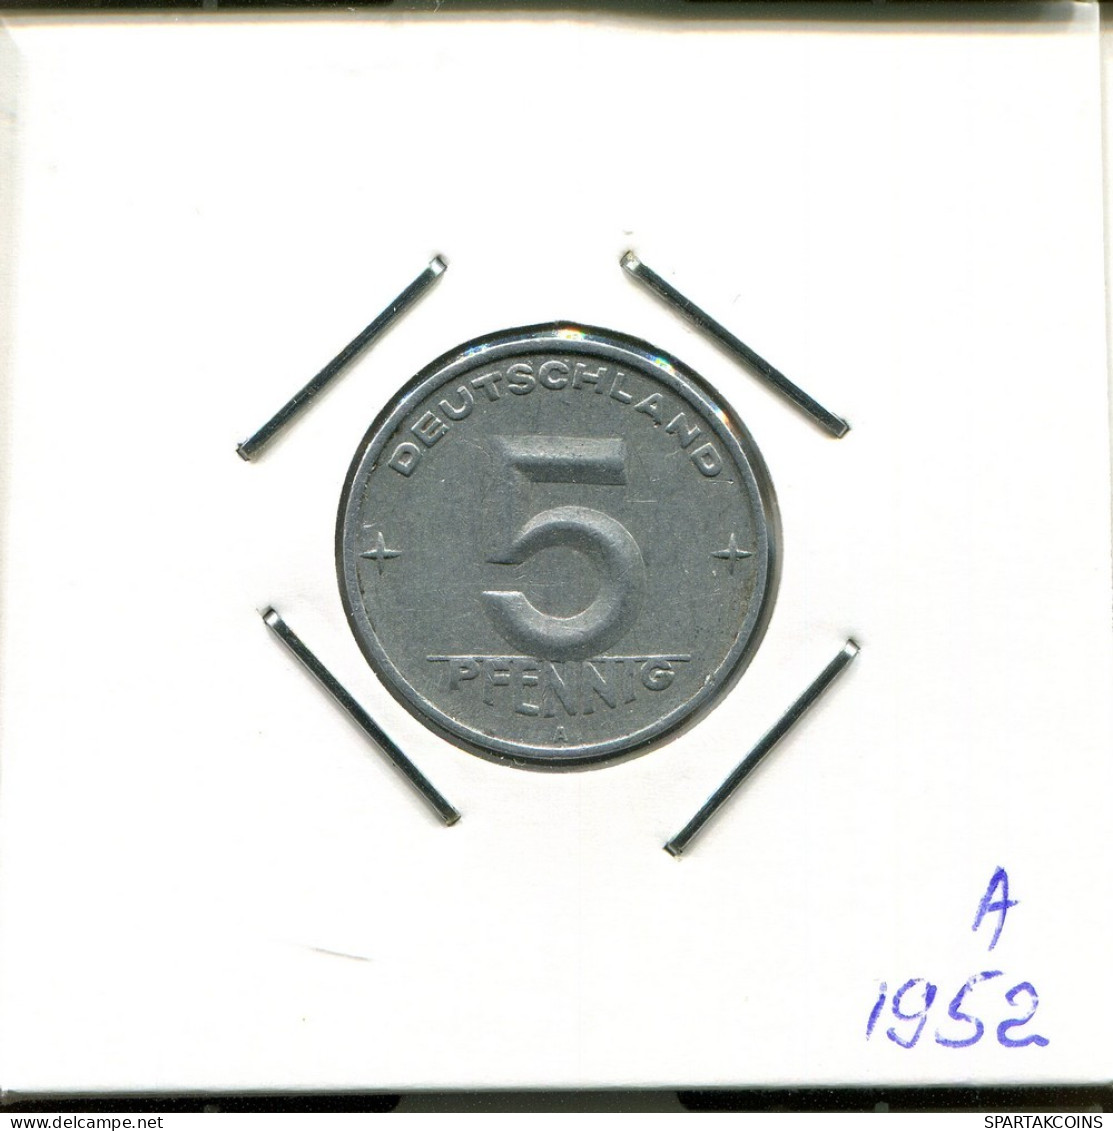 5 PFENNIG 1952 DDR EAST DEUTSCHLAND Münze GERMANY #AR755.D.A - 5 Pfennig